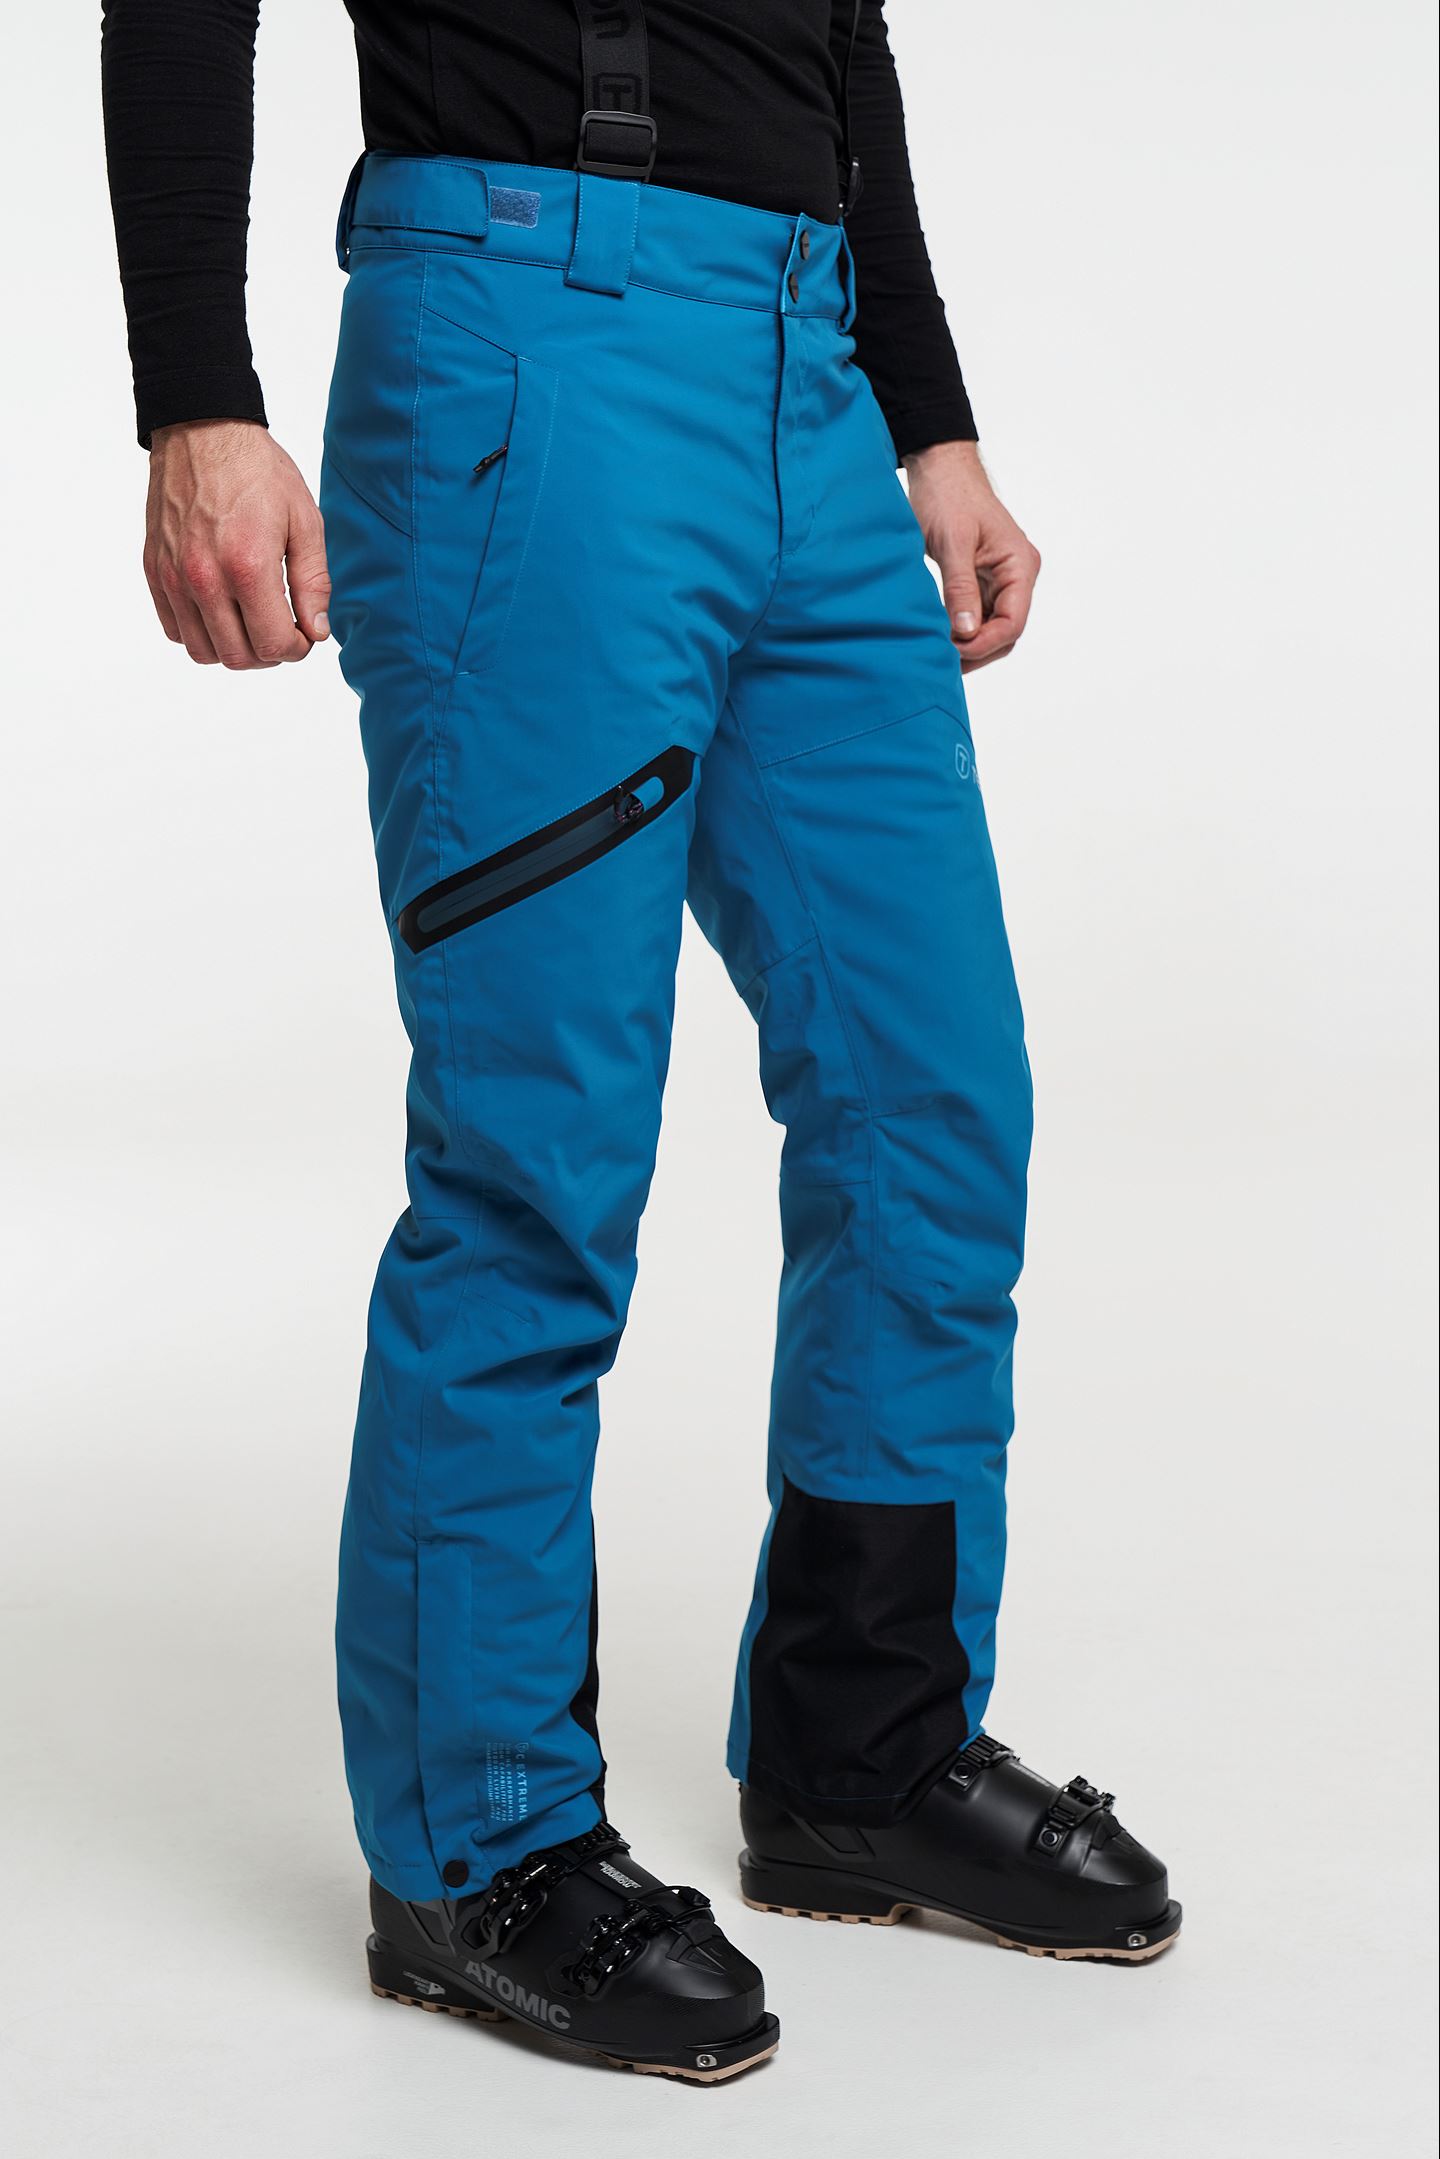 Uitsluiten bijtend slogan Core Ski Pants - Skibroek met afneembare bretels - Turquoise